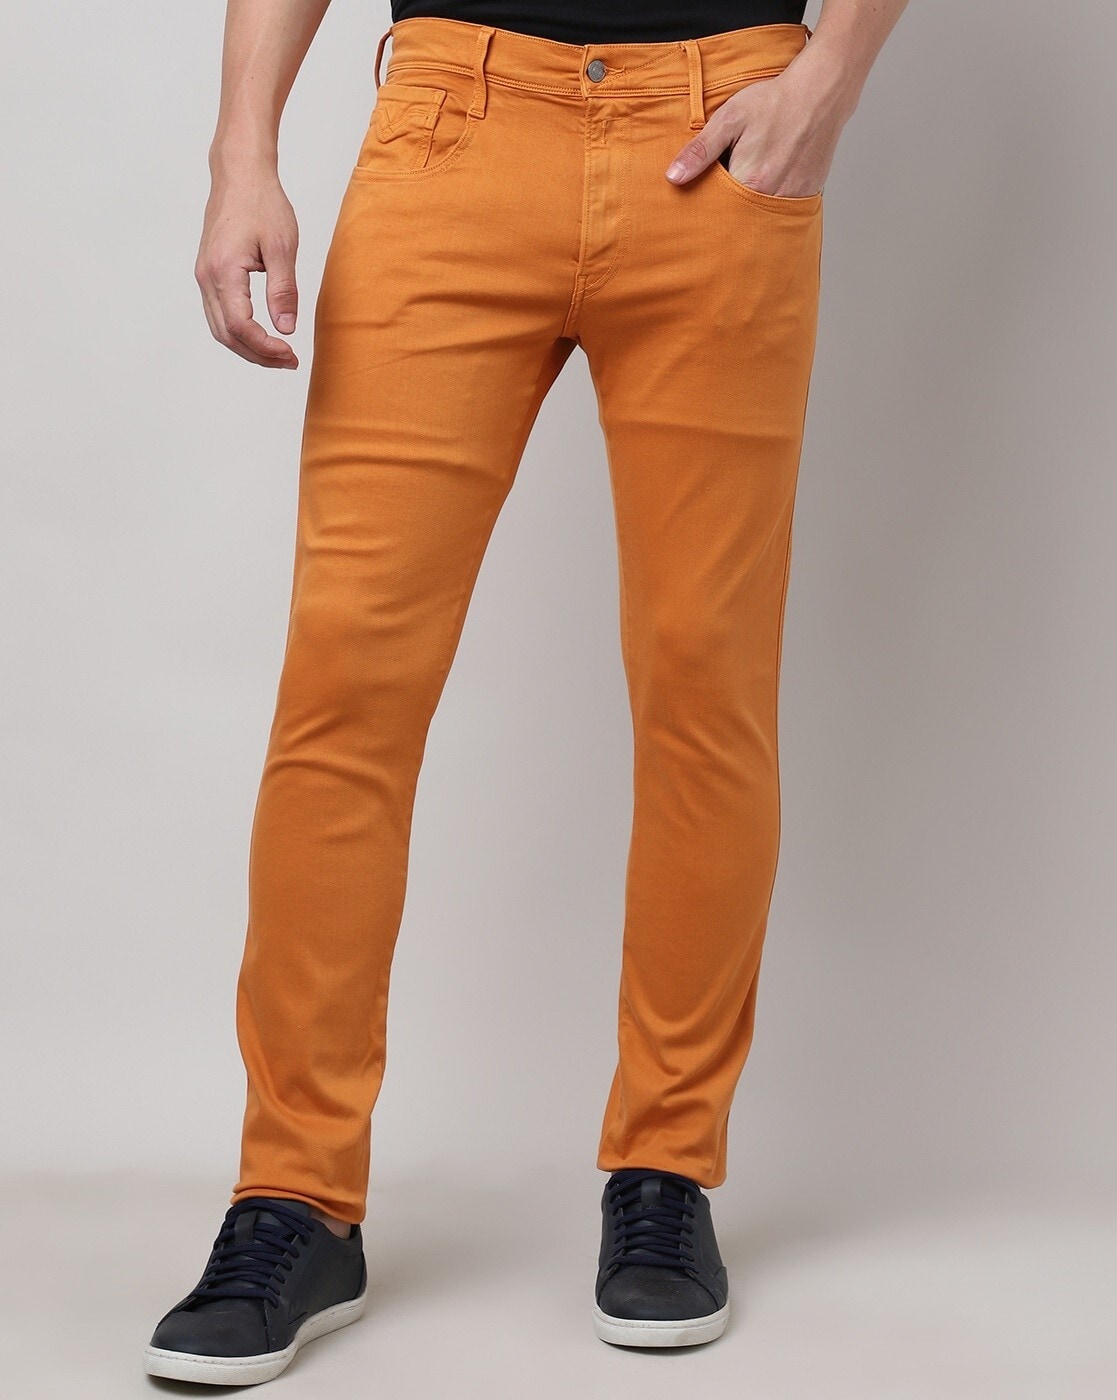 Allen Solly Skinny Boys Orange Jeans - Buy Allen Solly Skinny Boys Orange  Jeans Online at Best Prices in India | Flipkart.com